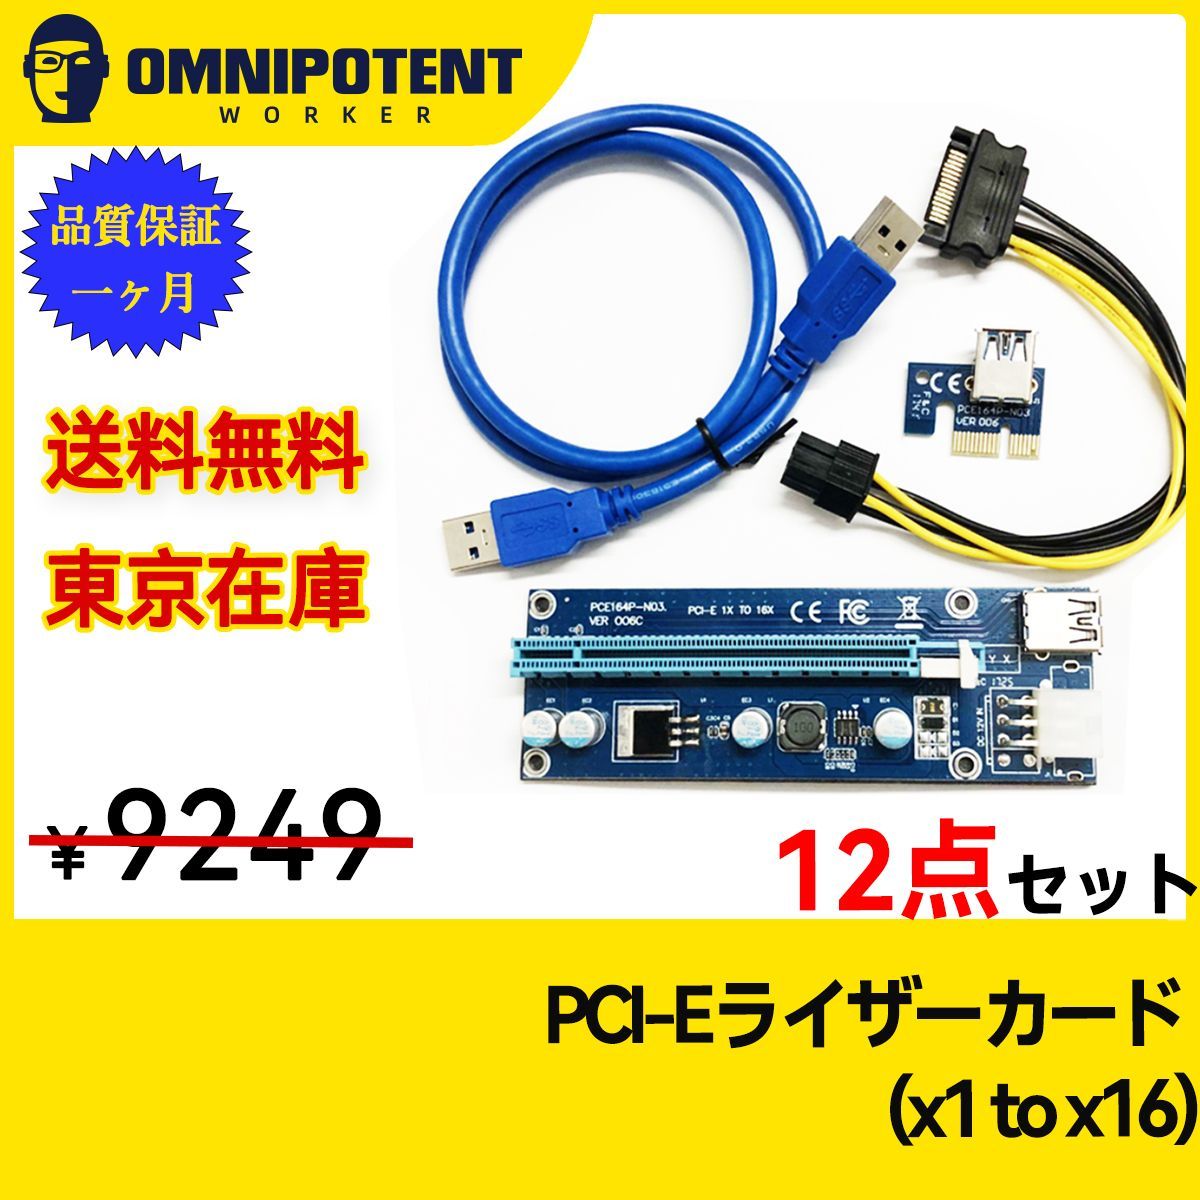 12点PCI-E ライザーカード (PCIe x1 to x16) マイニング用